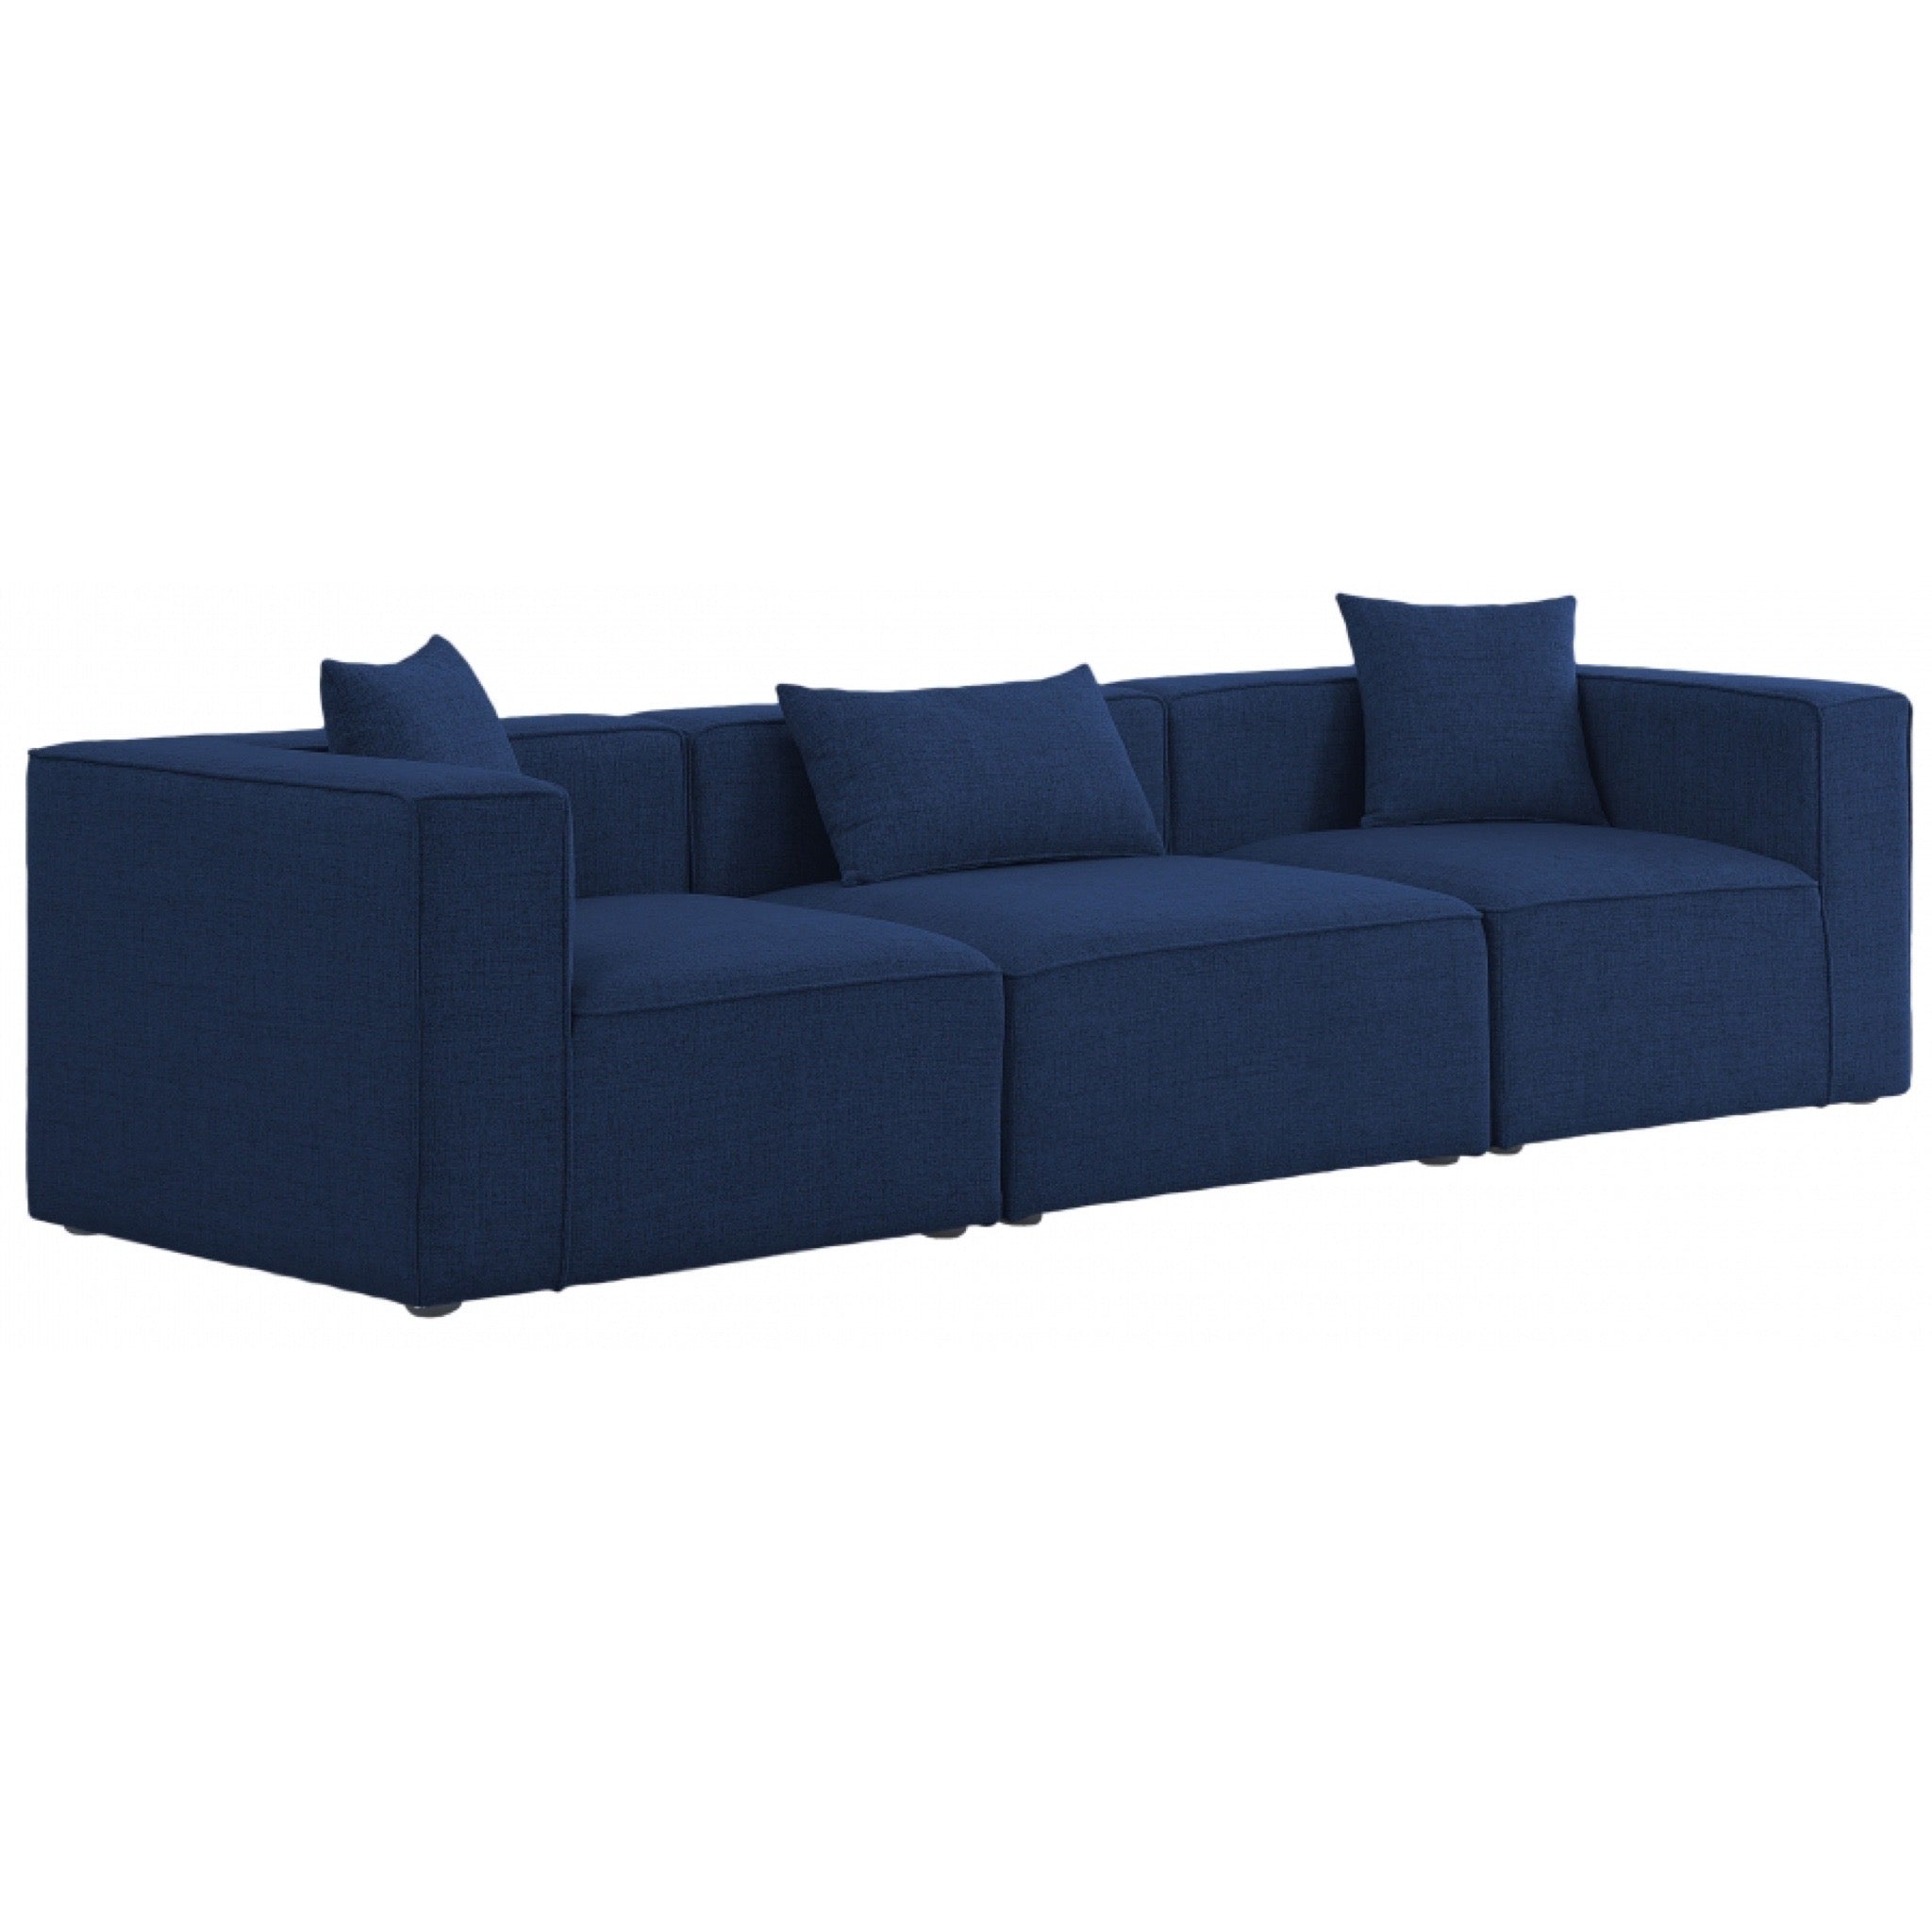 Modera Modular 3 Piece Sofa